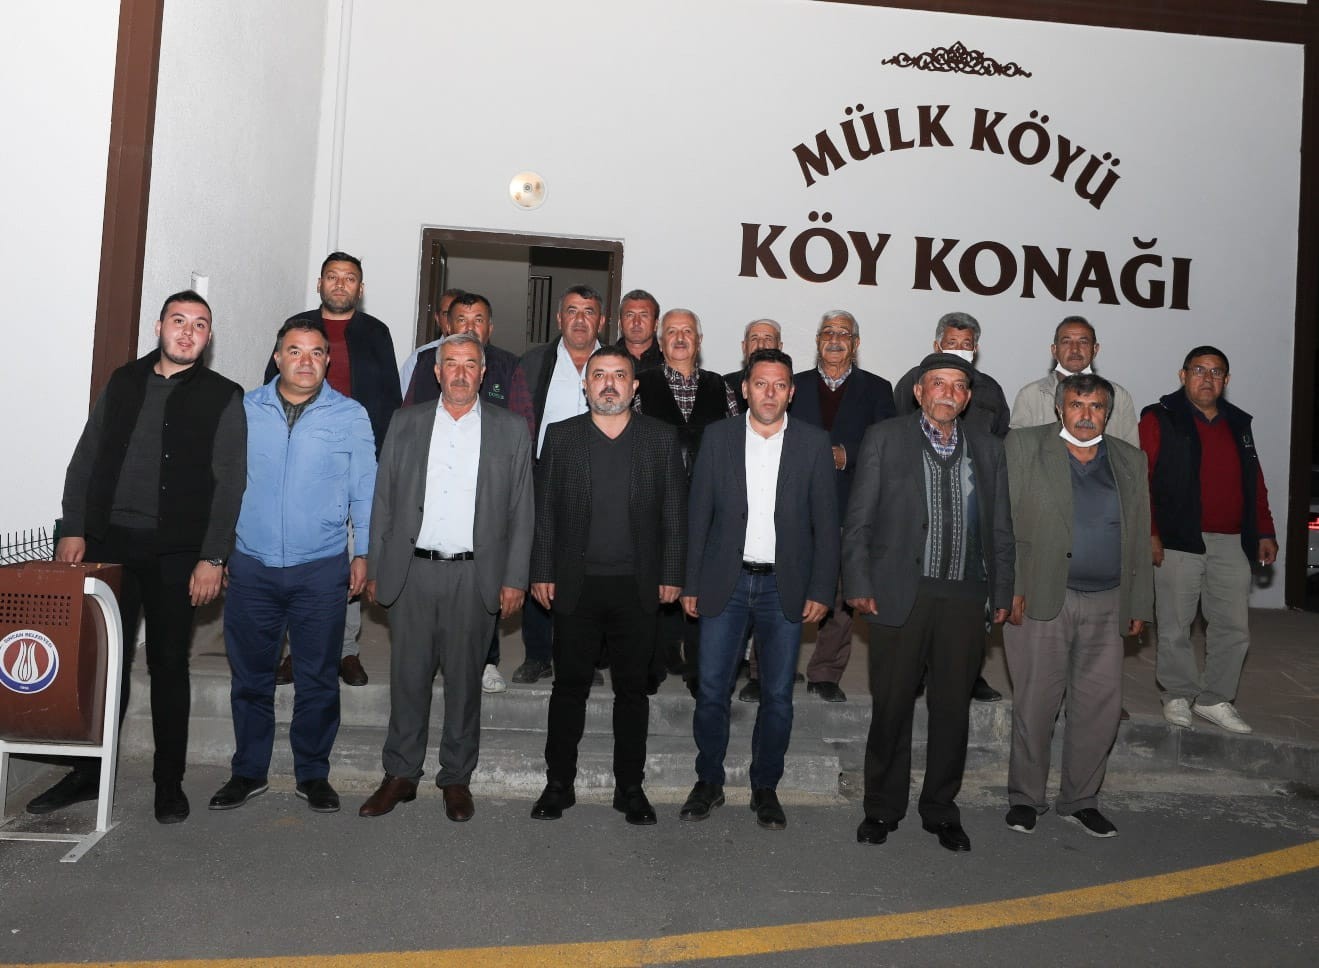 Sincan Belediye Başkanı Murat Ercan Sincan’da ulaşmadık mahalle, selamlaşmadık hemşehri bırakmıyor #ankara